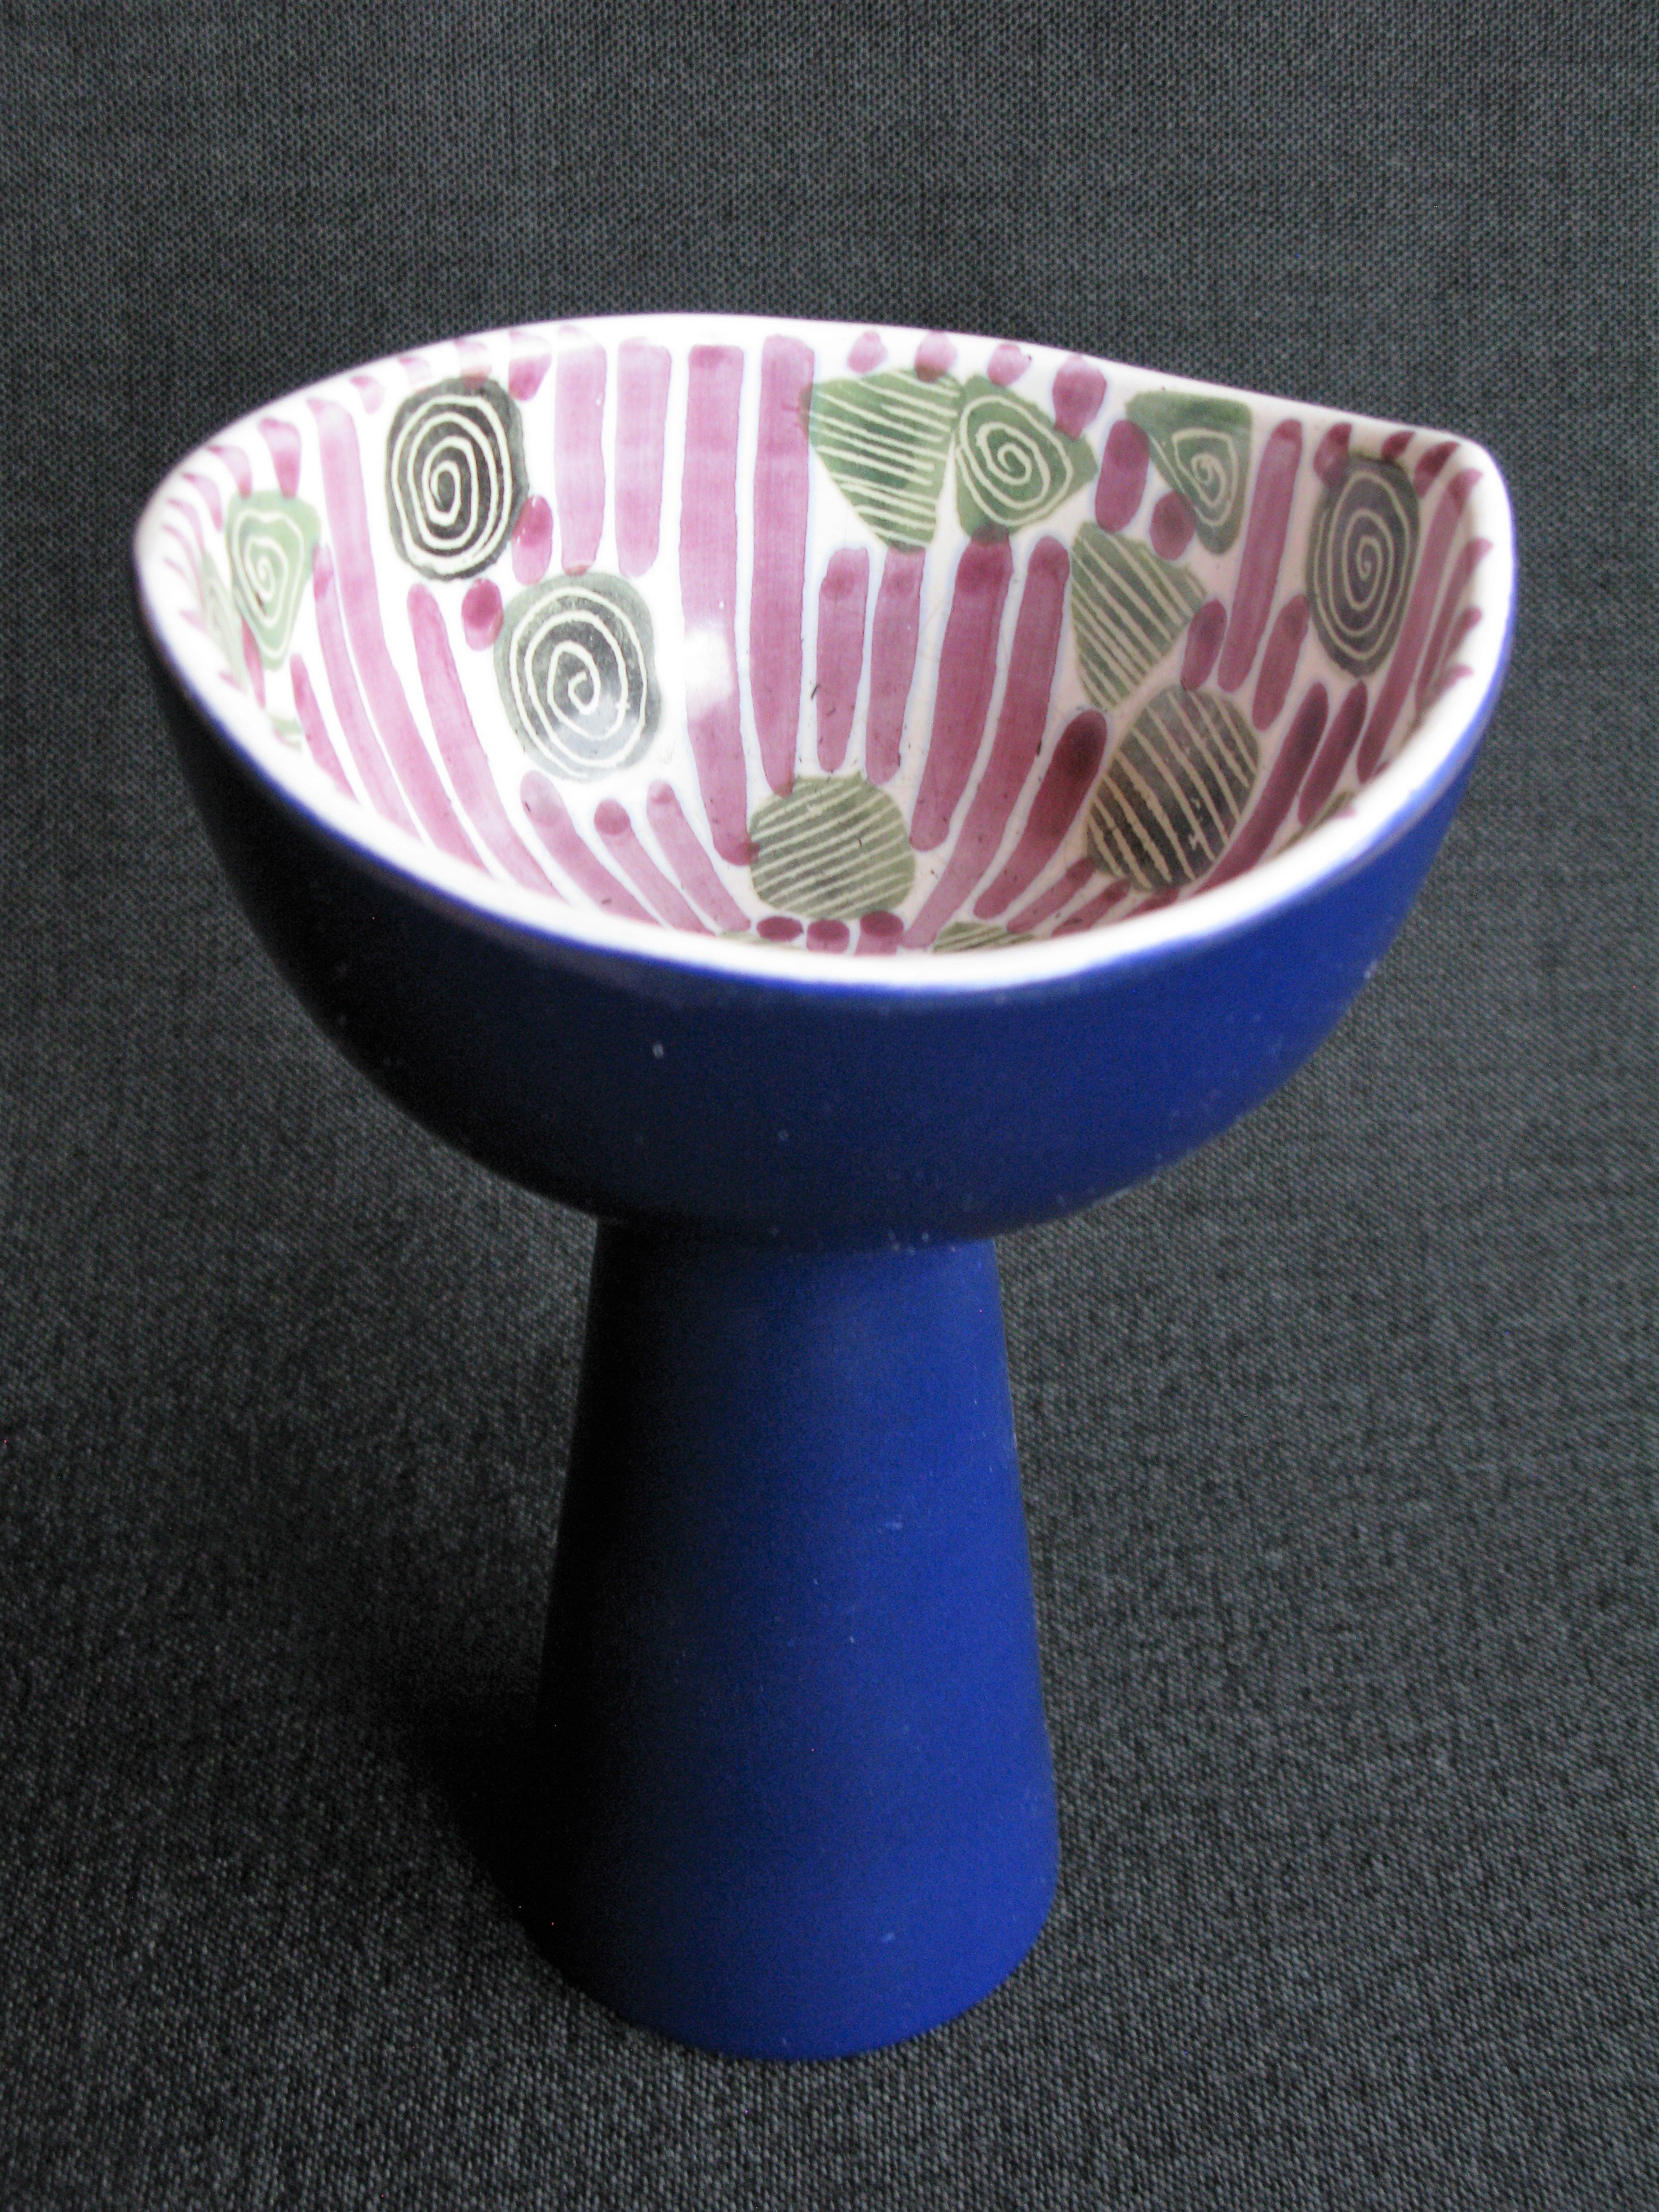 vase 4150 sold